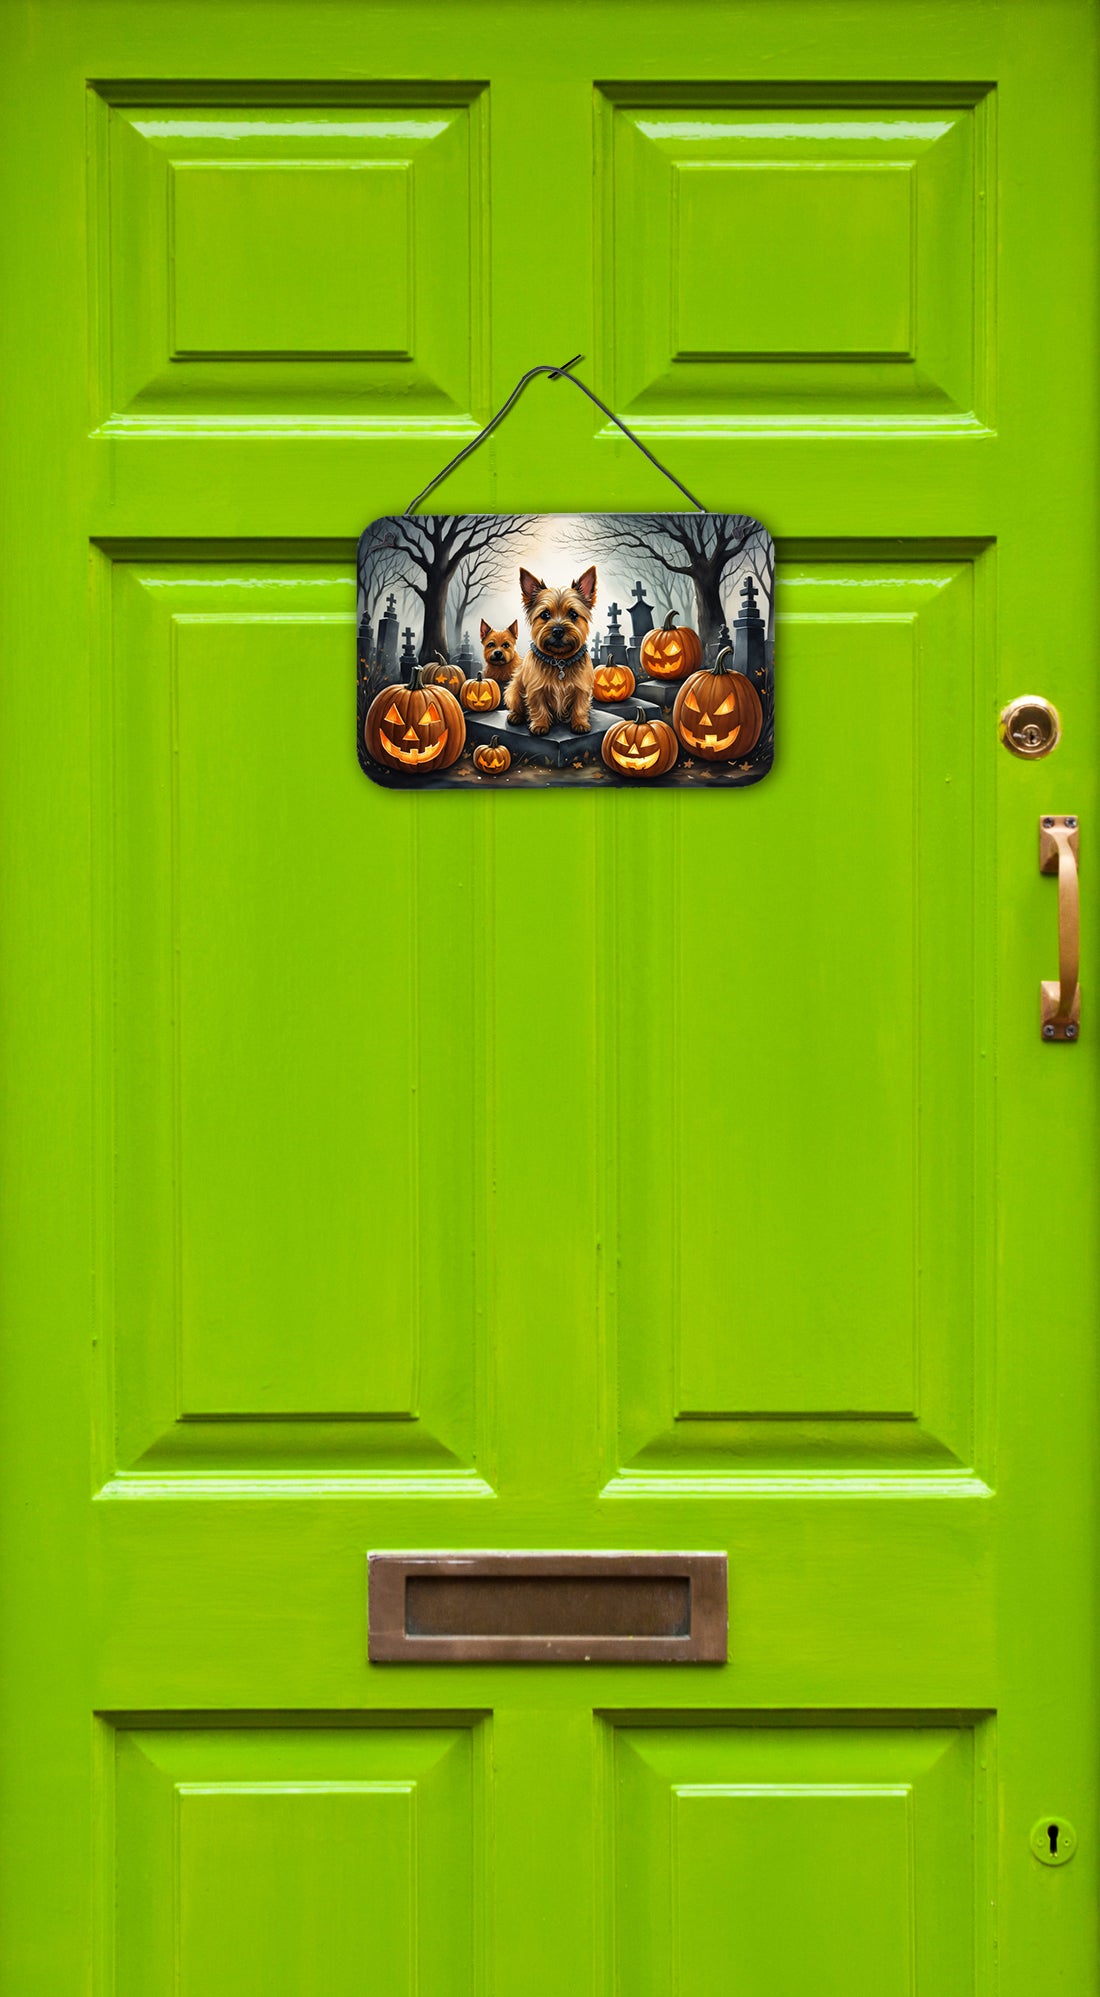 Buy this Norwich Terrier Spooky Halloween Wall or Door Hanging Prints